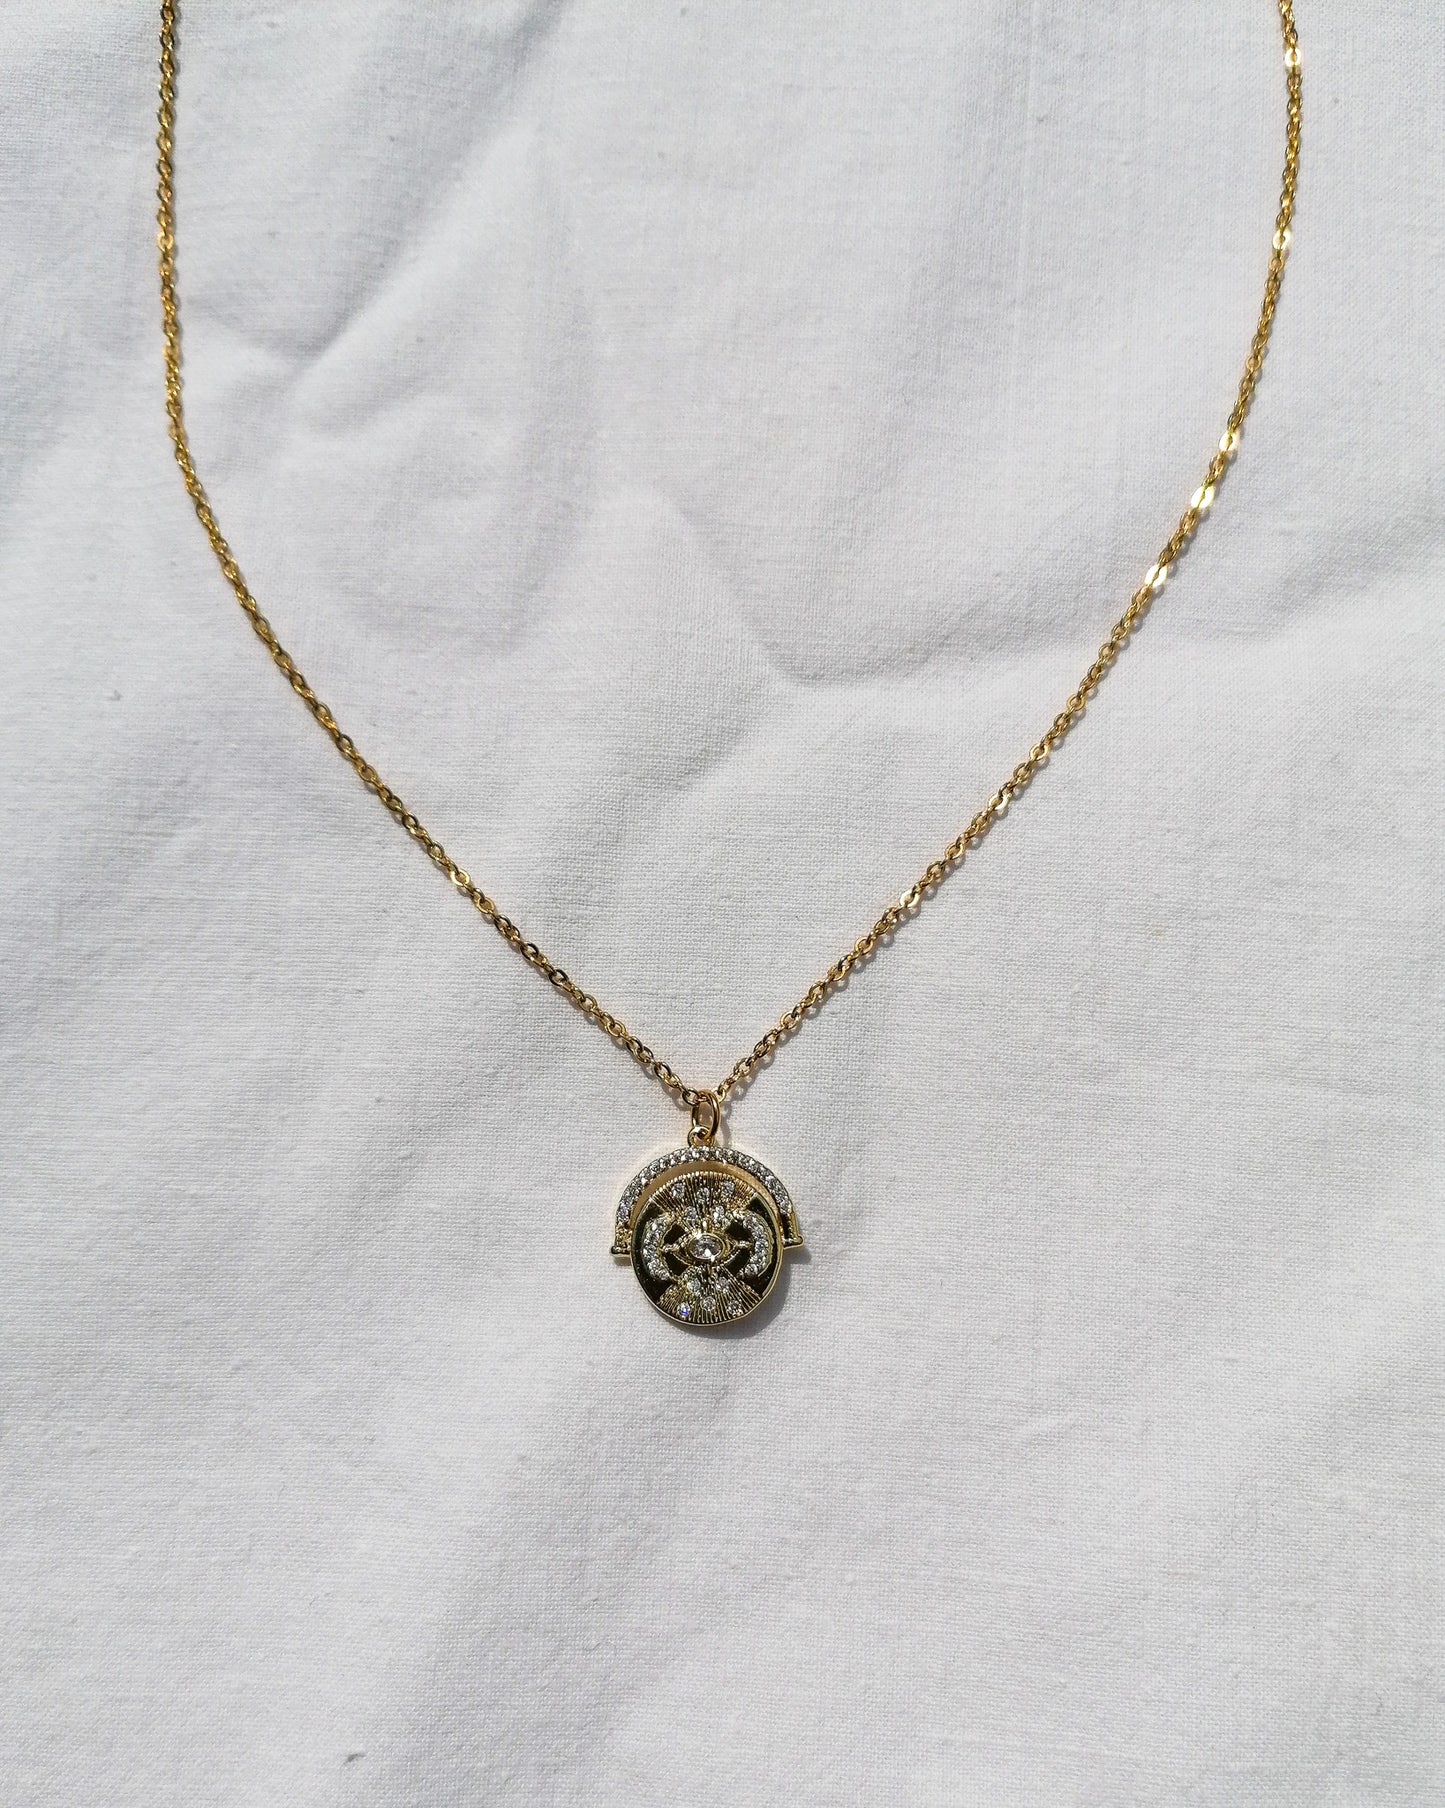 Celestial coin necklace